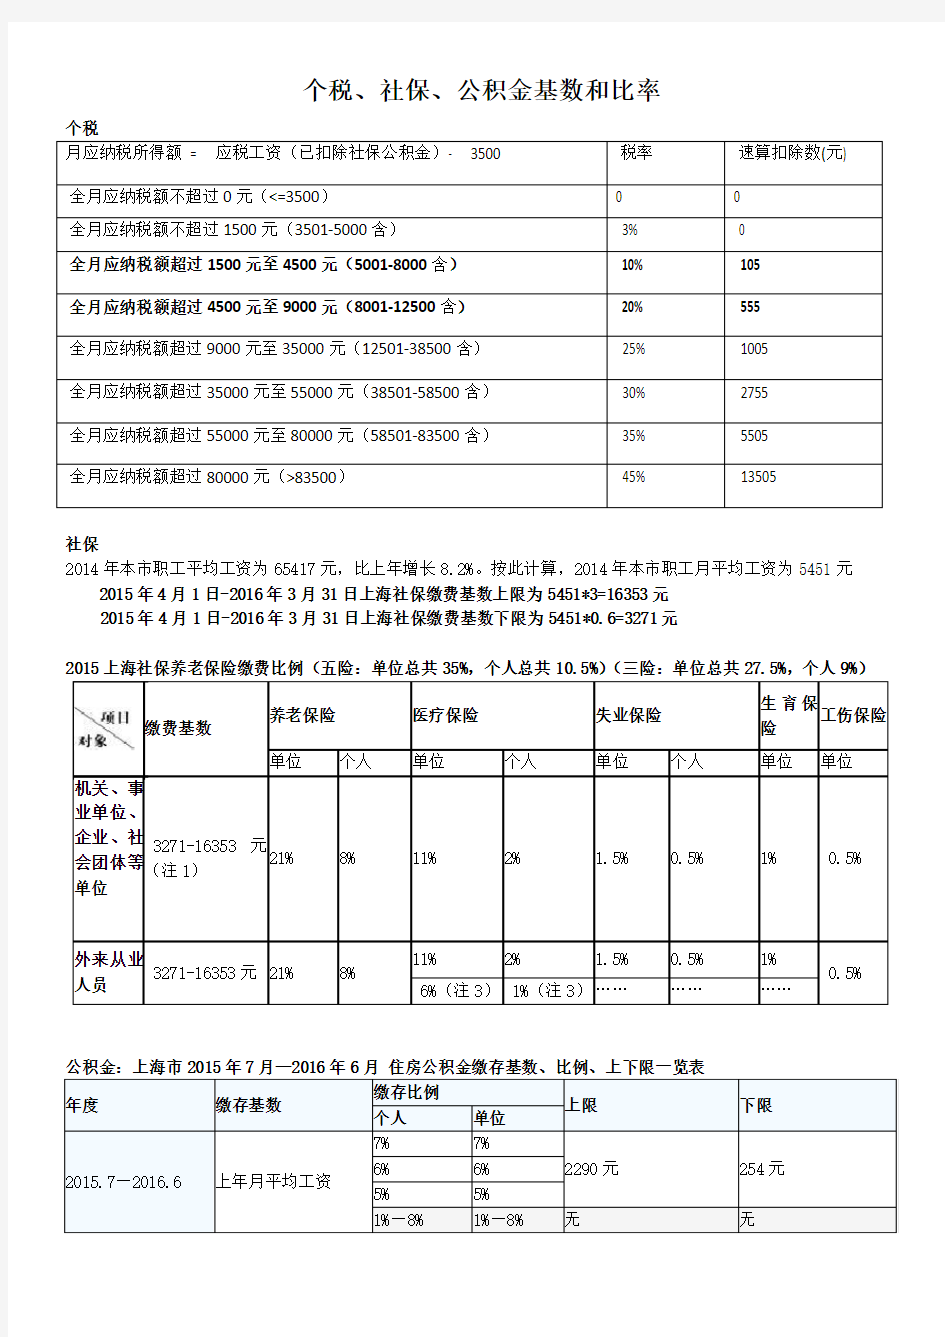 上海个税社保公积金基数和比率